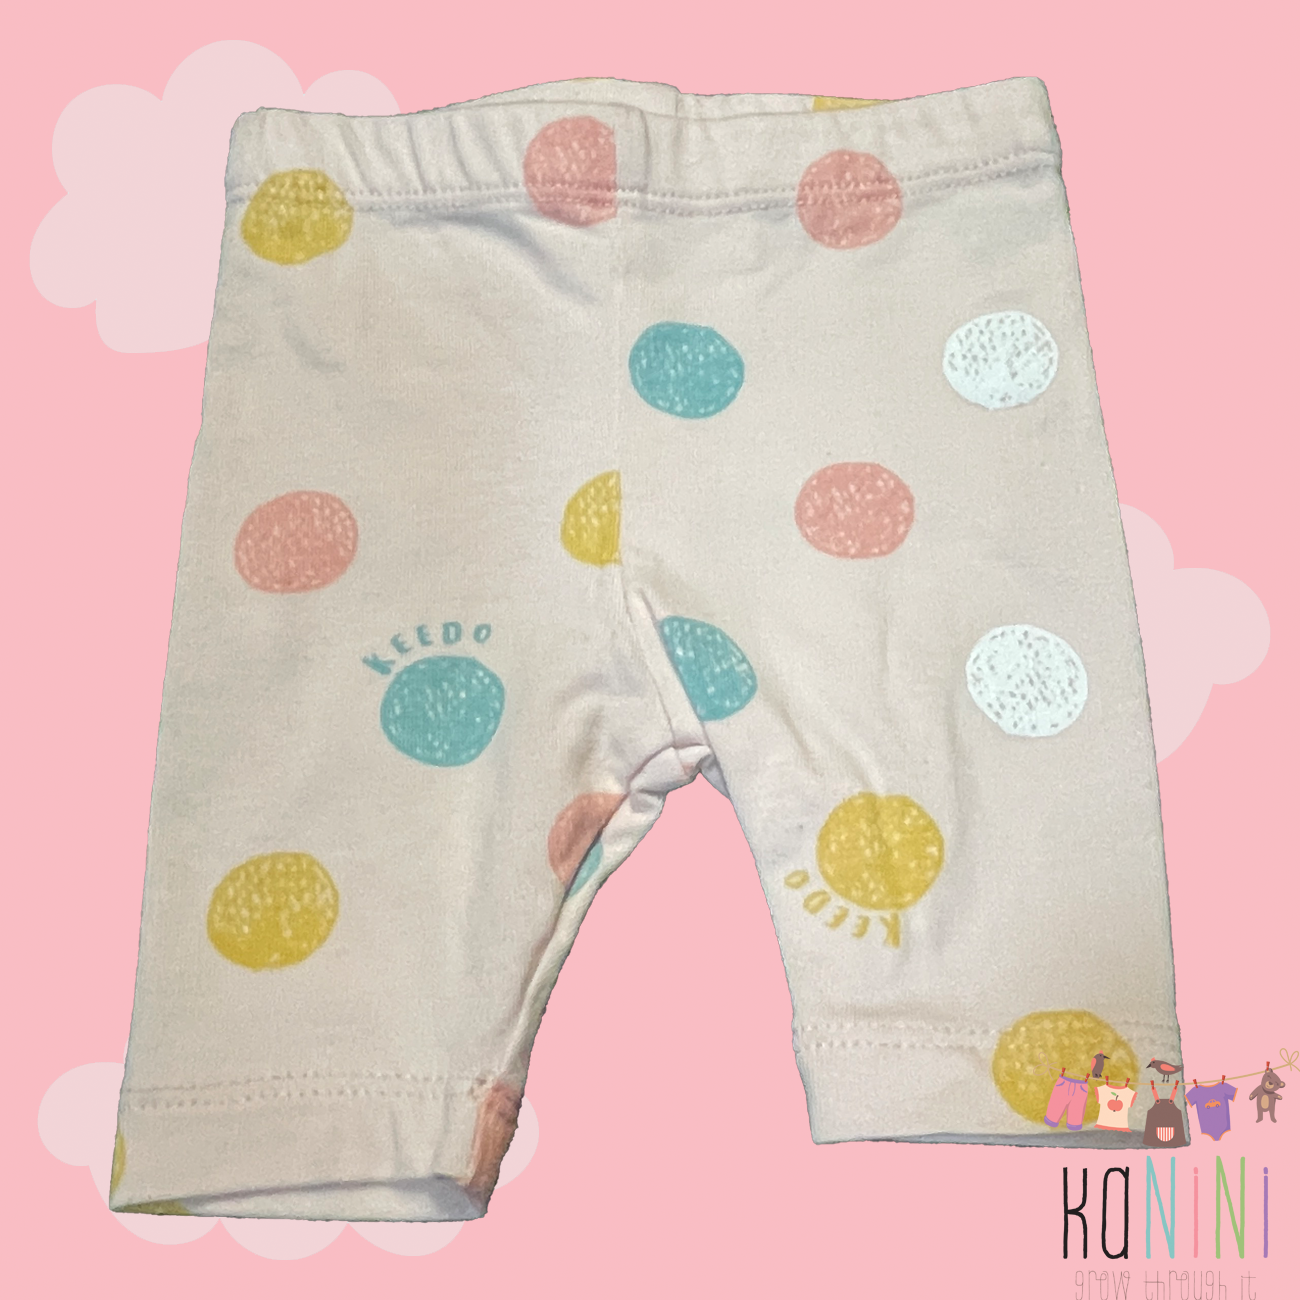 Featured image for “Keedo Newborn Girls Pastel Pink Polkadot Leggings”